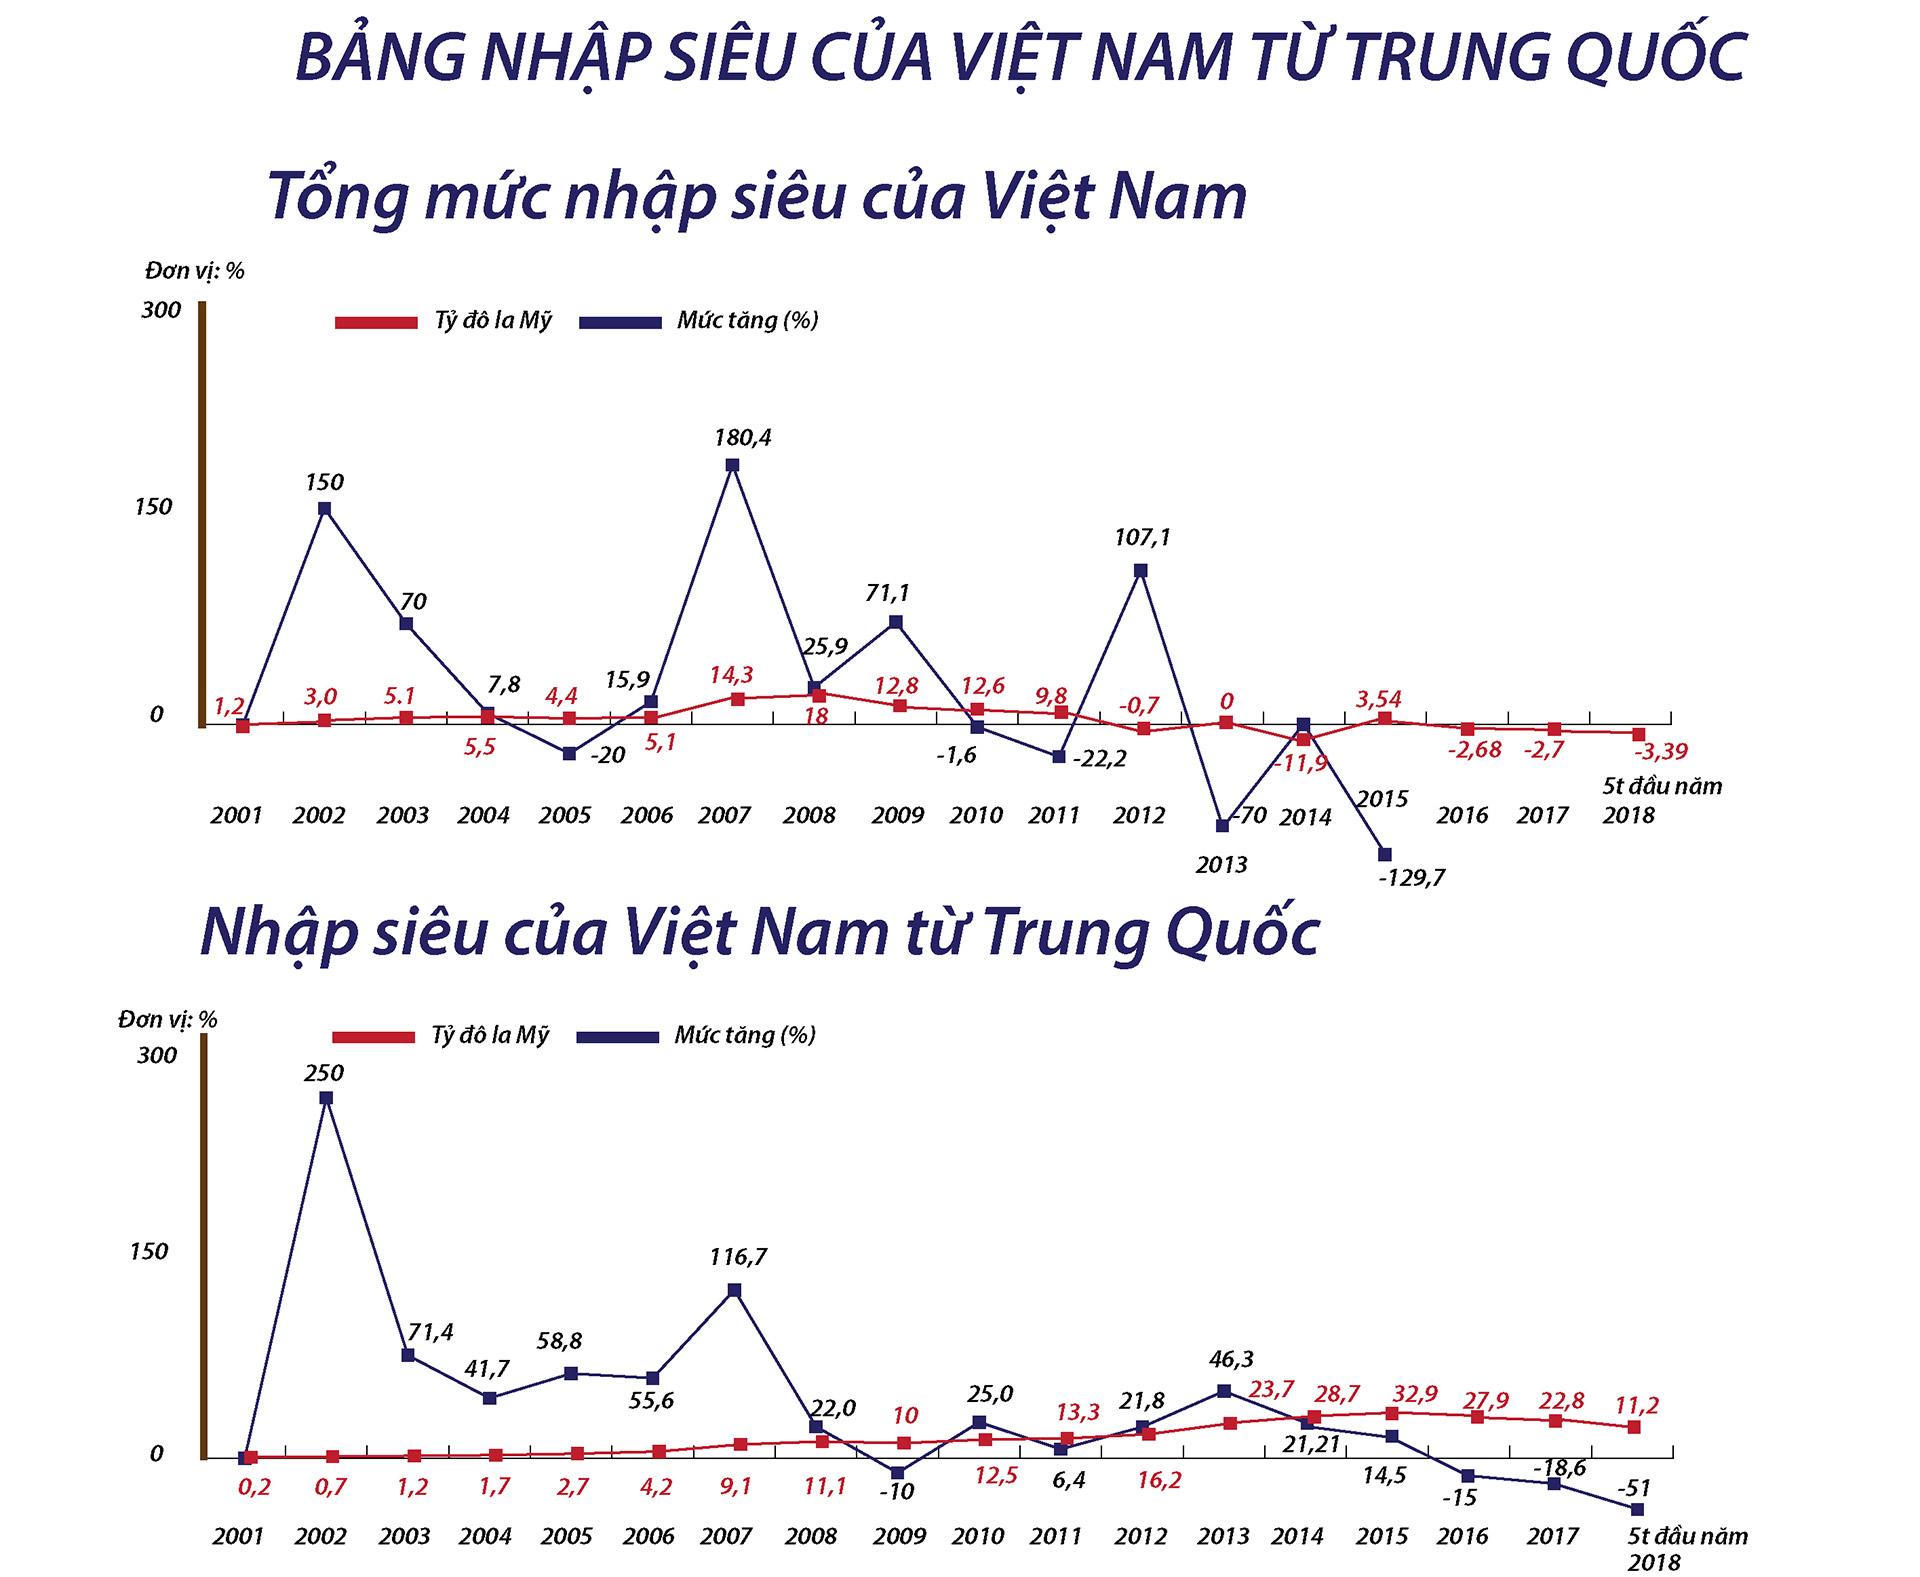 Chiến tranh thương mại Mỹ - Trung: Việt Nam đón cơ hội từ “bão” - 11